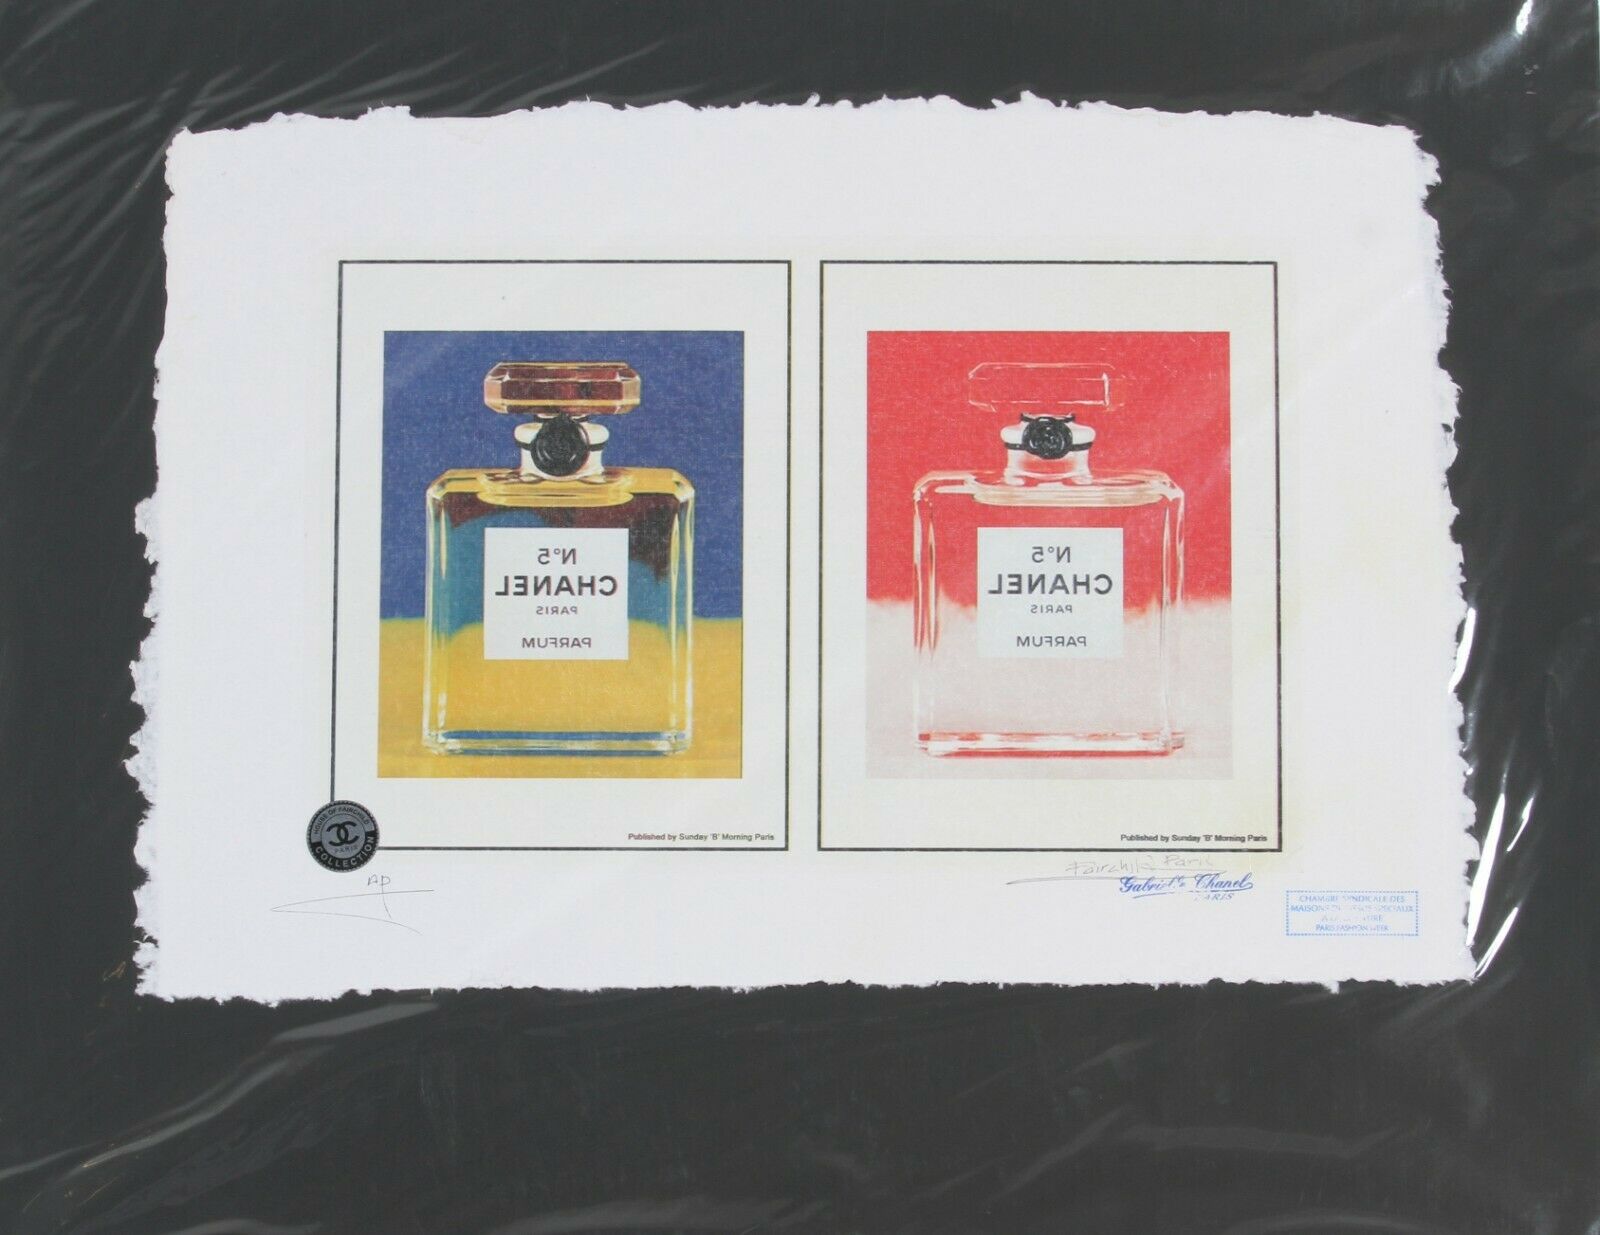 Signed J. Fairchild Paris Limited Edition Color Print, A Chanel Perfume  Bottle #239547